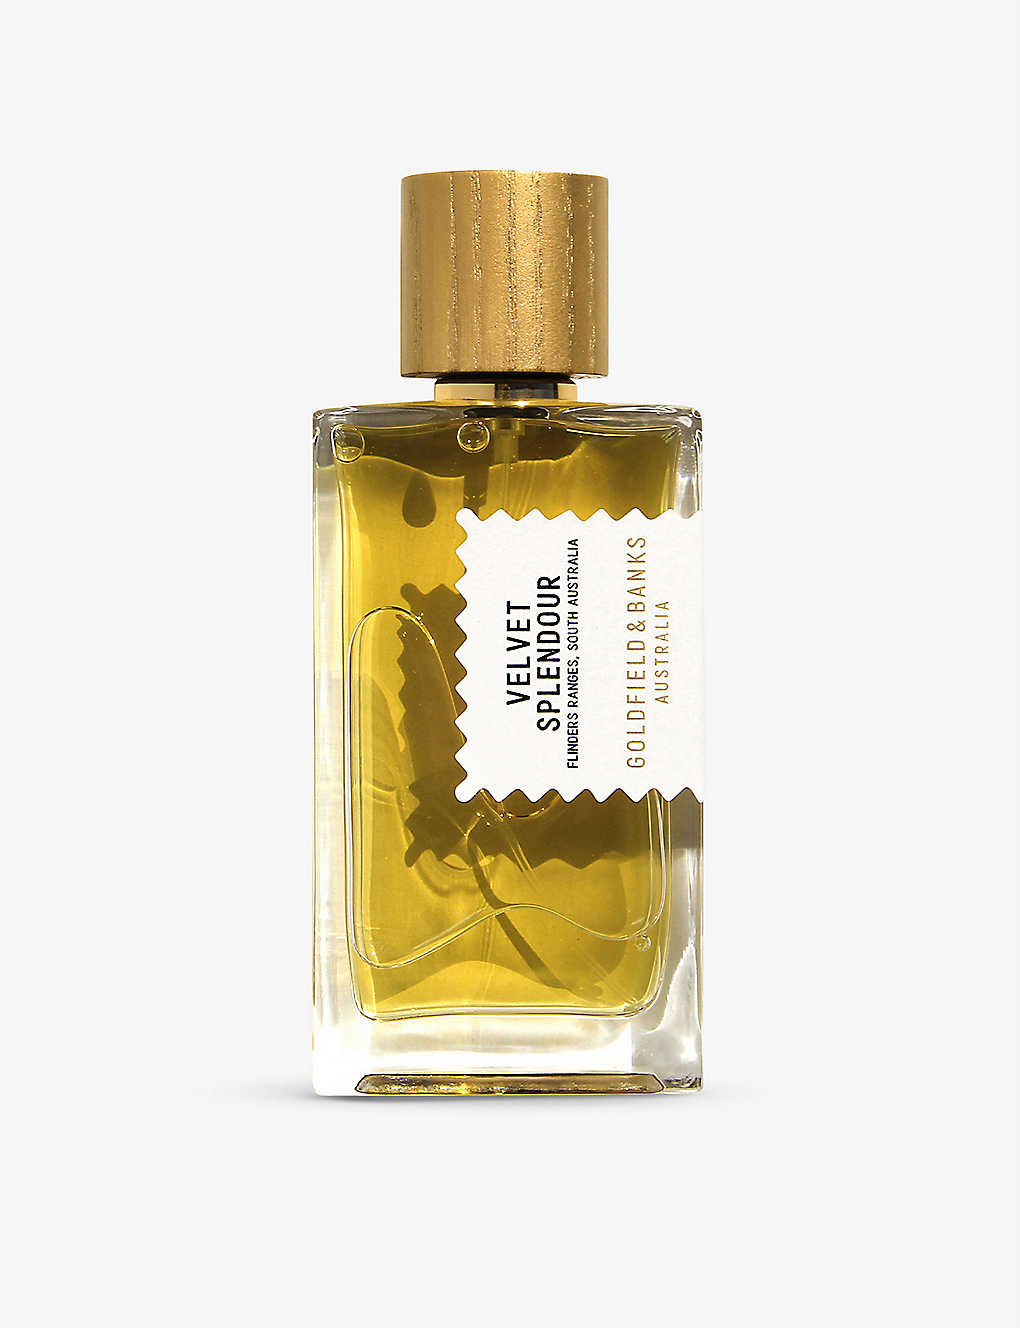 Goldfield & Banks Velvet Splendour Perfume Concentrate 100ml